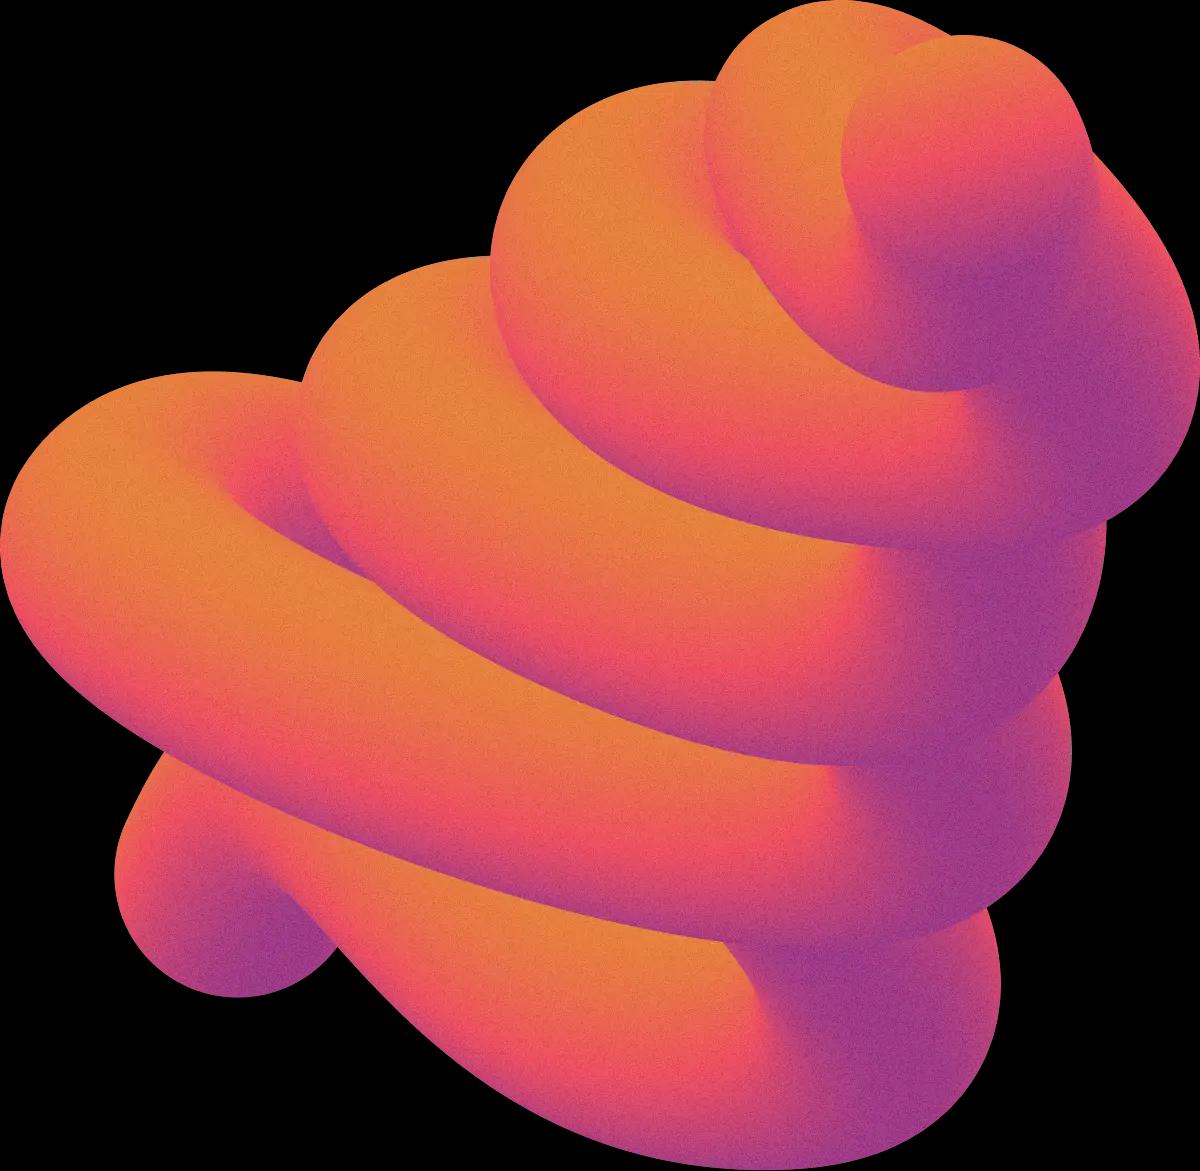 Abstrakcyjny kolorowy kształt przypominający sprężynę